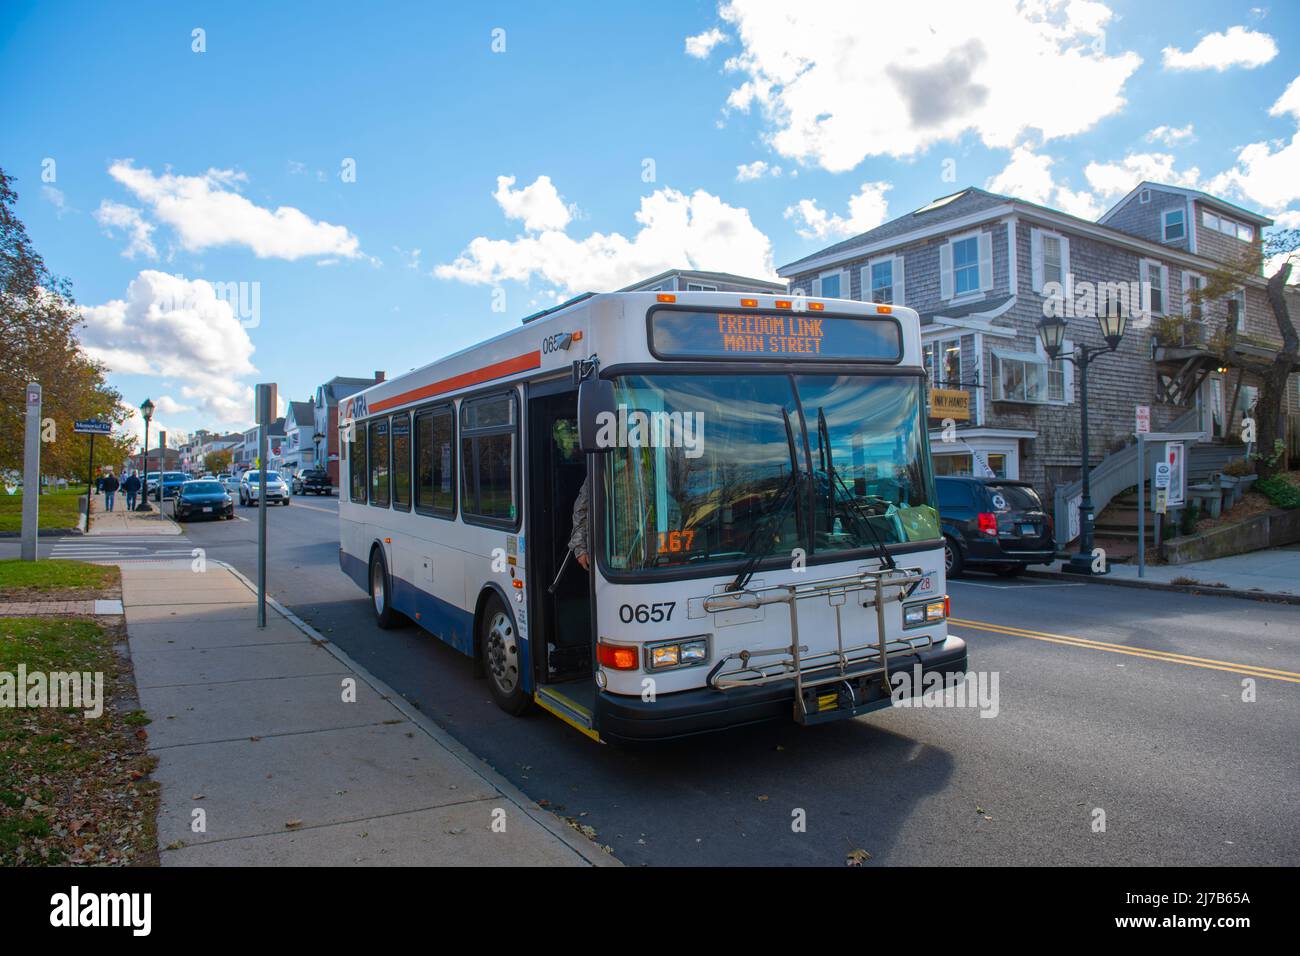 GATRA (Greater Attleboro Taunton Regional Transit Authority) bus sur court Street dans le centre-ville historique de Plymouth, Massachusetts ma, Etats-Unis. Banque D'Images